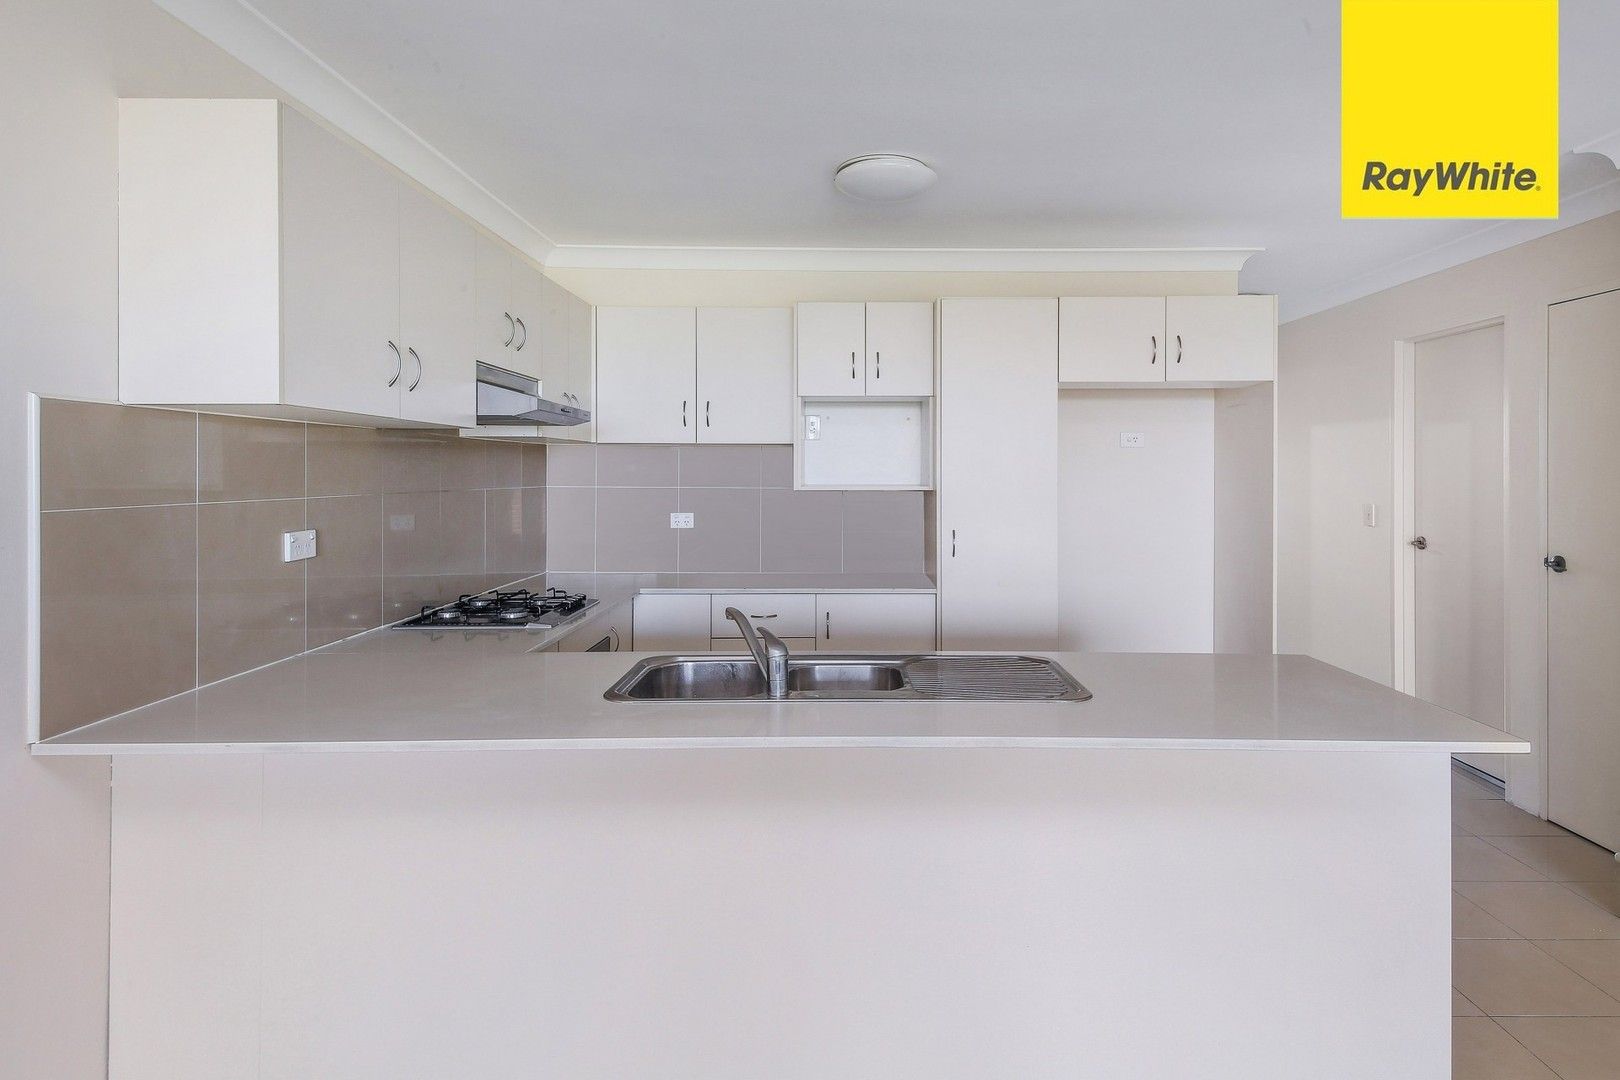 2 bedrooms Apartment / Unit / Flat in 24/40 Earl Street MERRYLANDS NSW, 2160